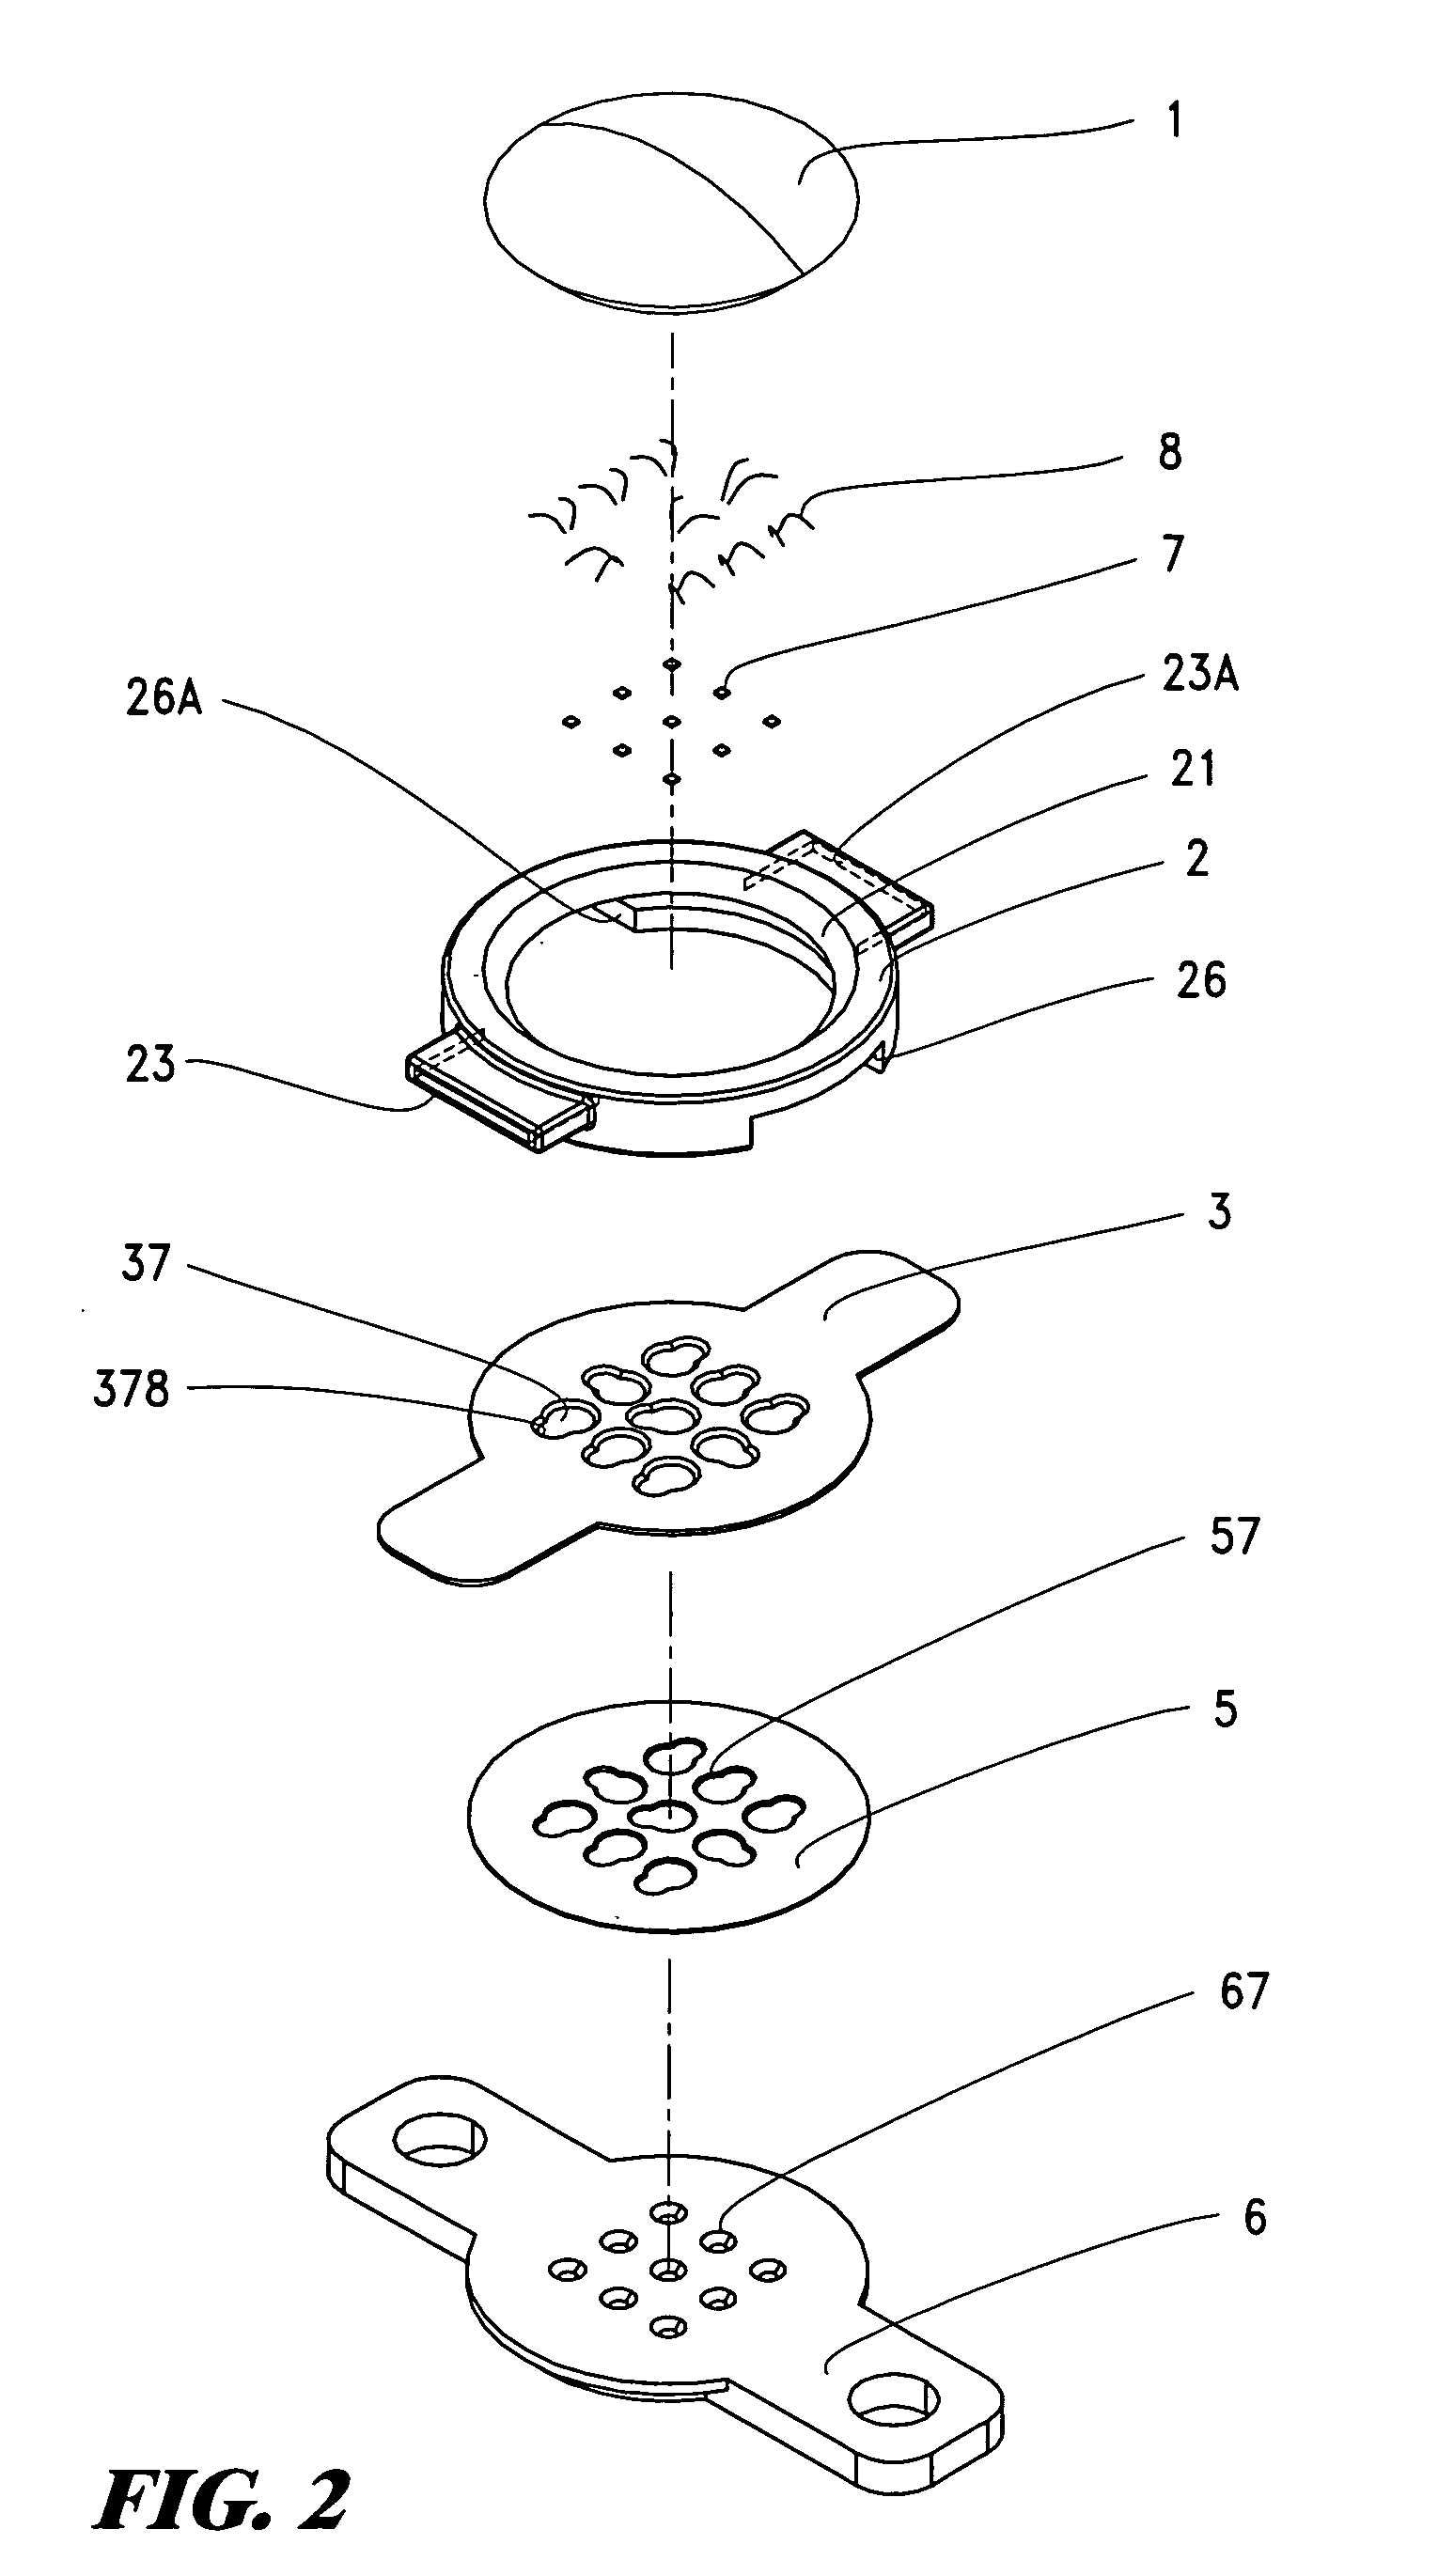 Multi-chip cup semi-conductor lamp